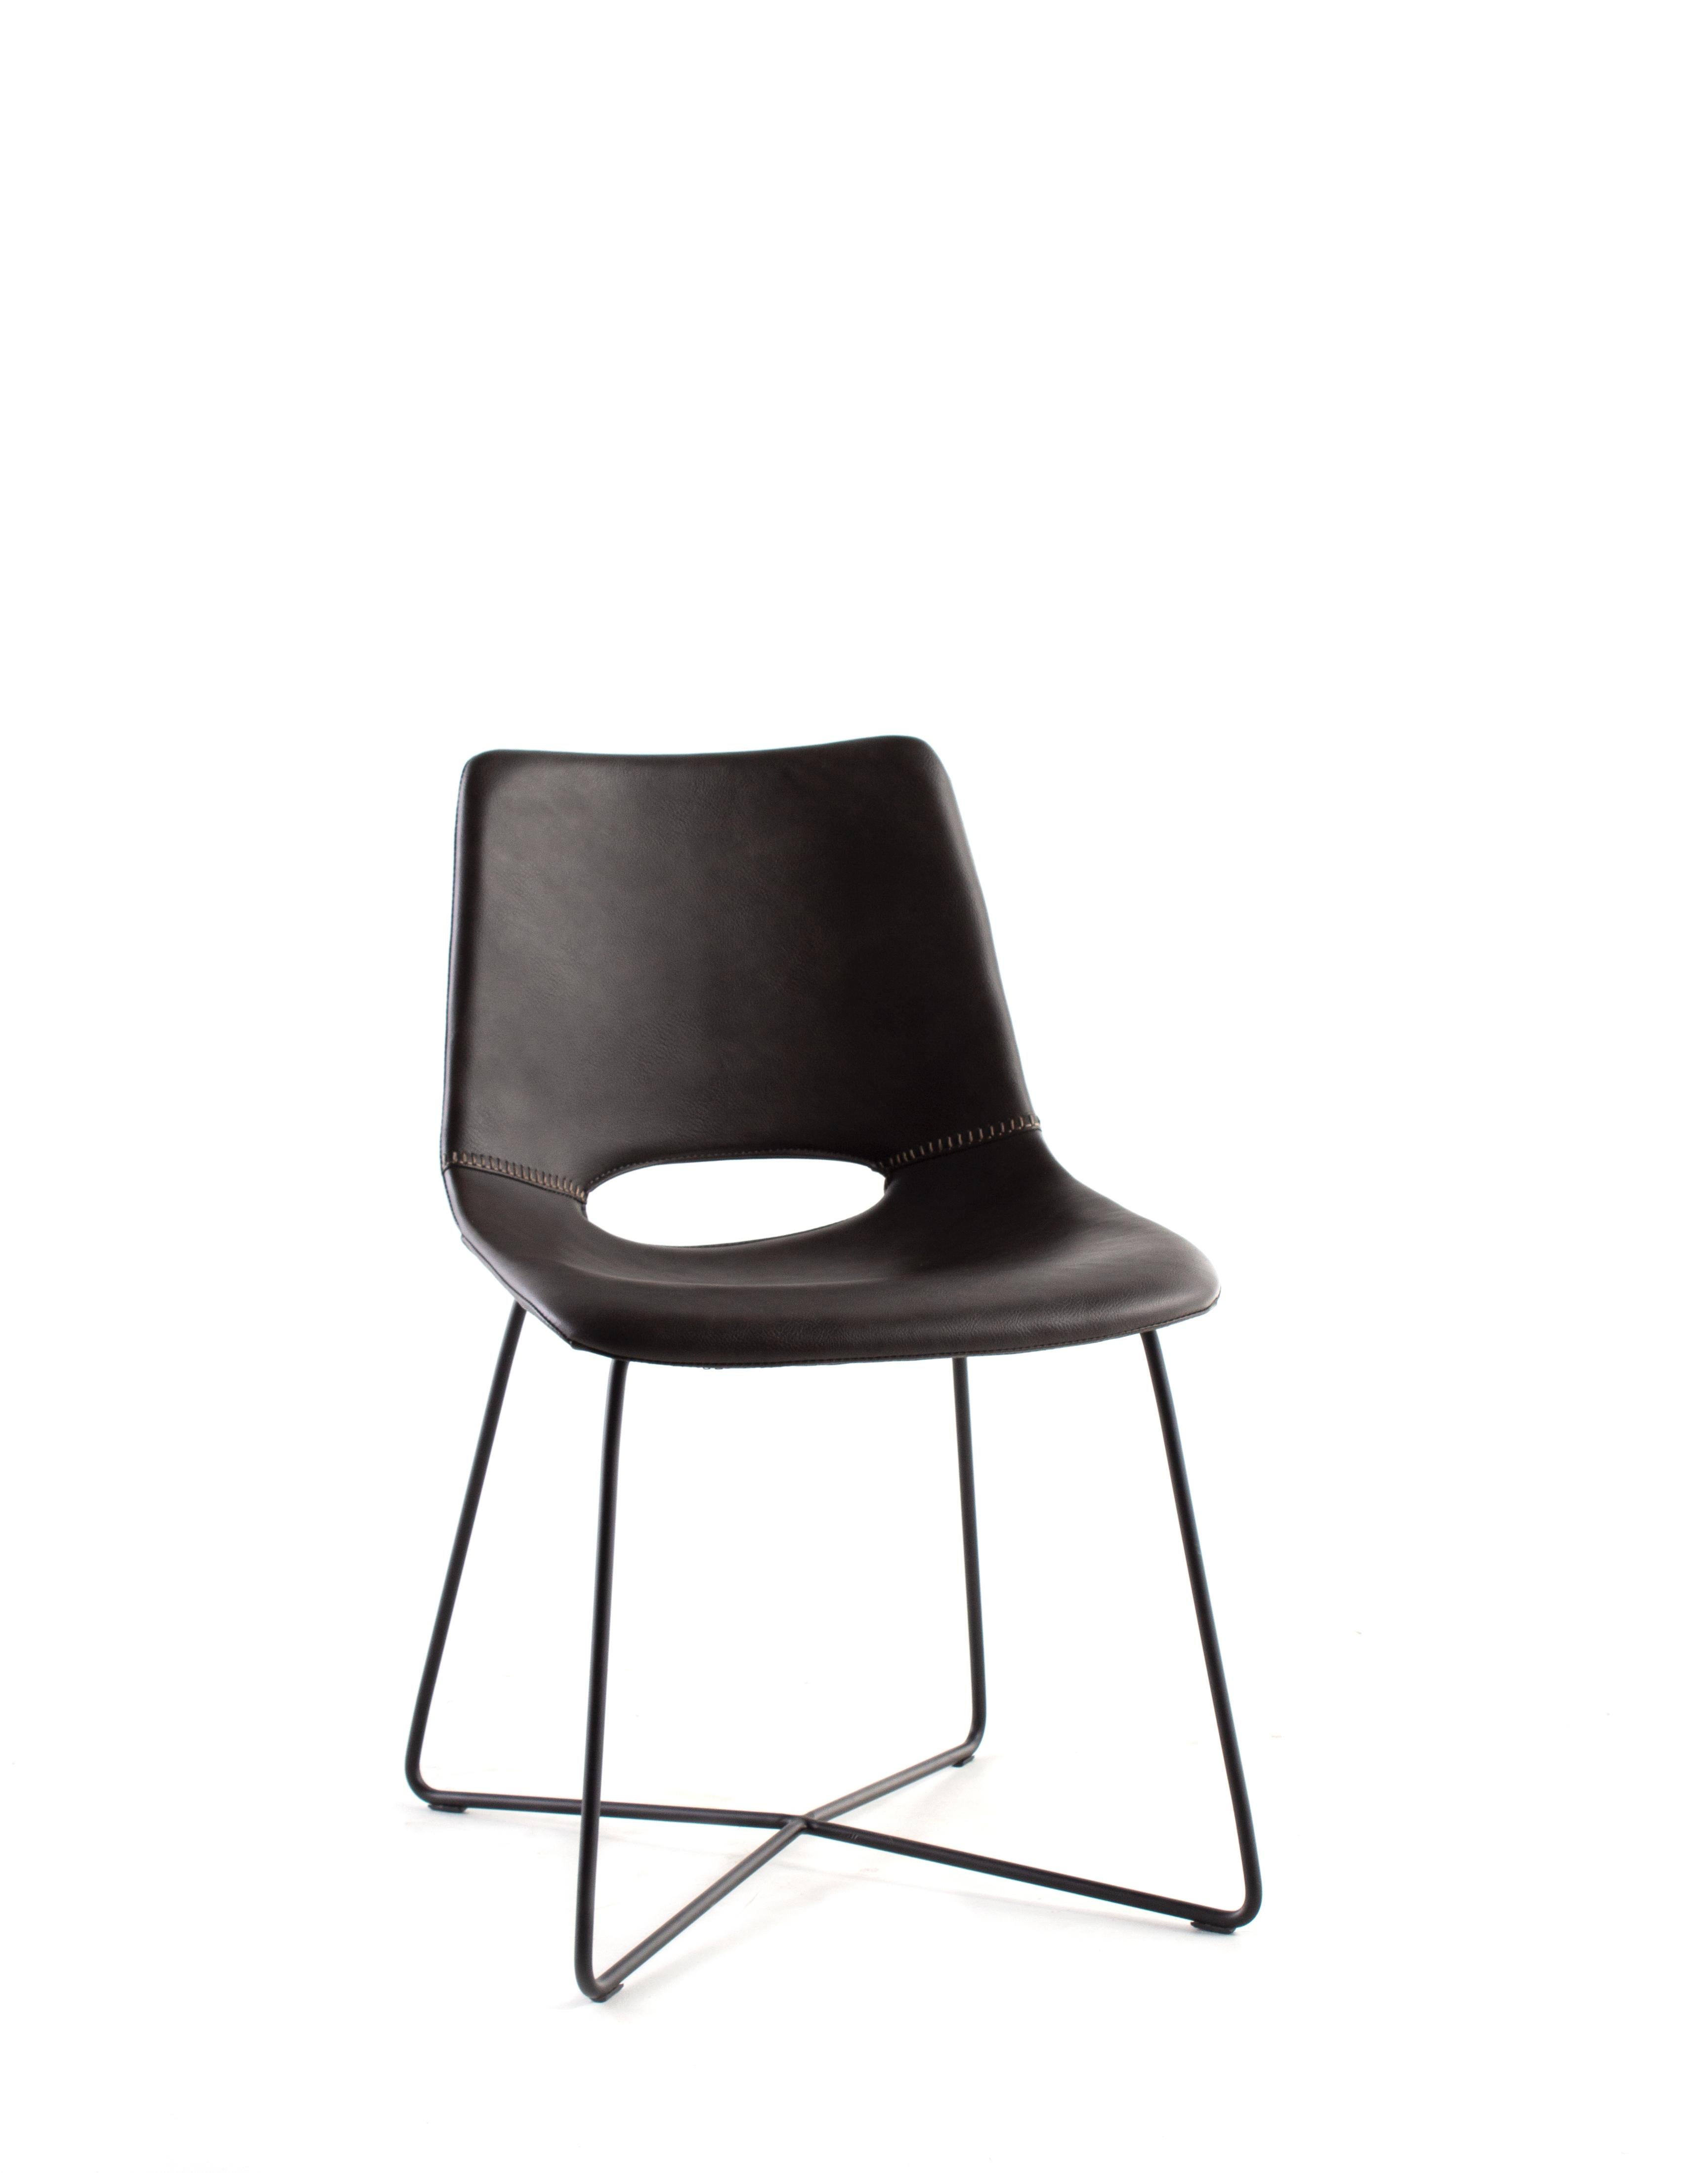 Moderner Esszimmerstuhl aus dunklem, seetangfarbenem Leder mit schwarzen Stahlbeinen.

Dieses Stück ist Teil von Brendan Bass' einzigartiger Kollektion Le Monde. Die Kollektion Le Monde, französisch für 